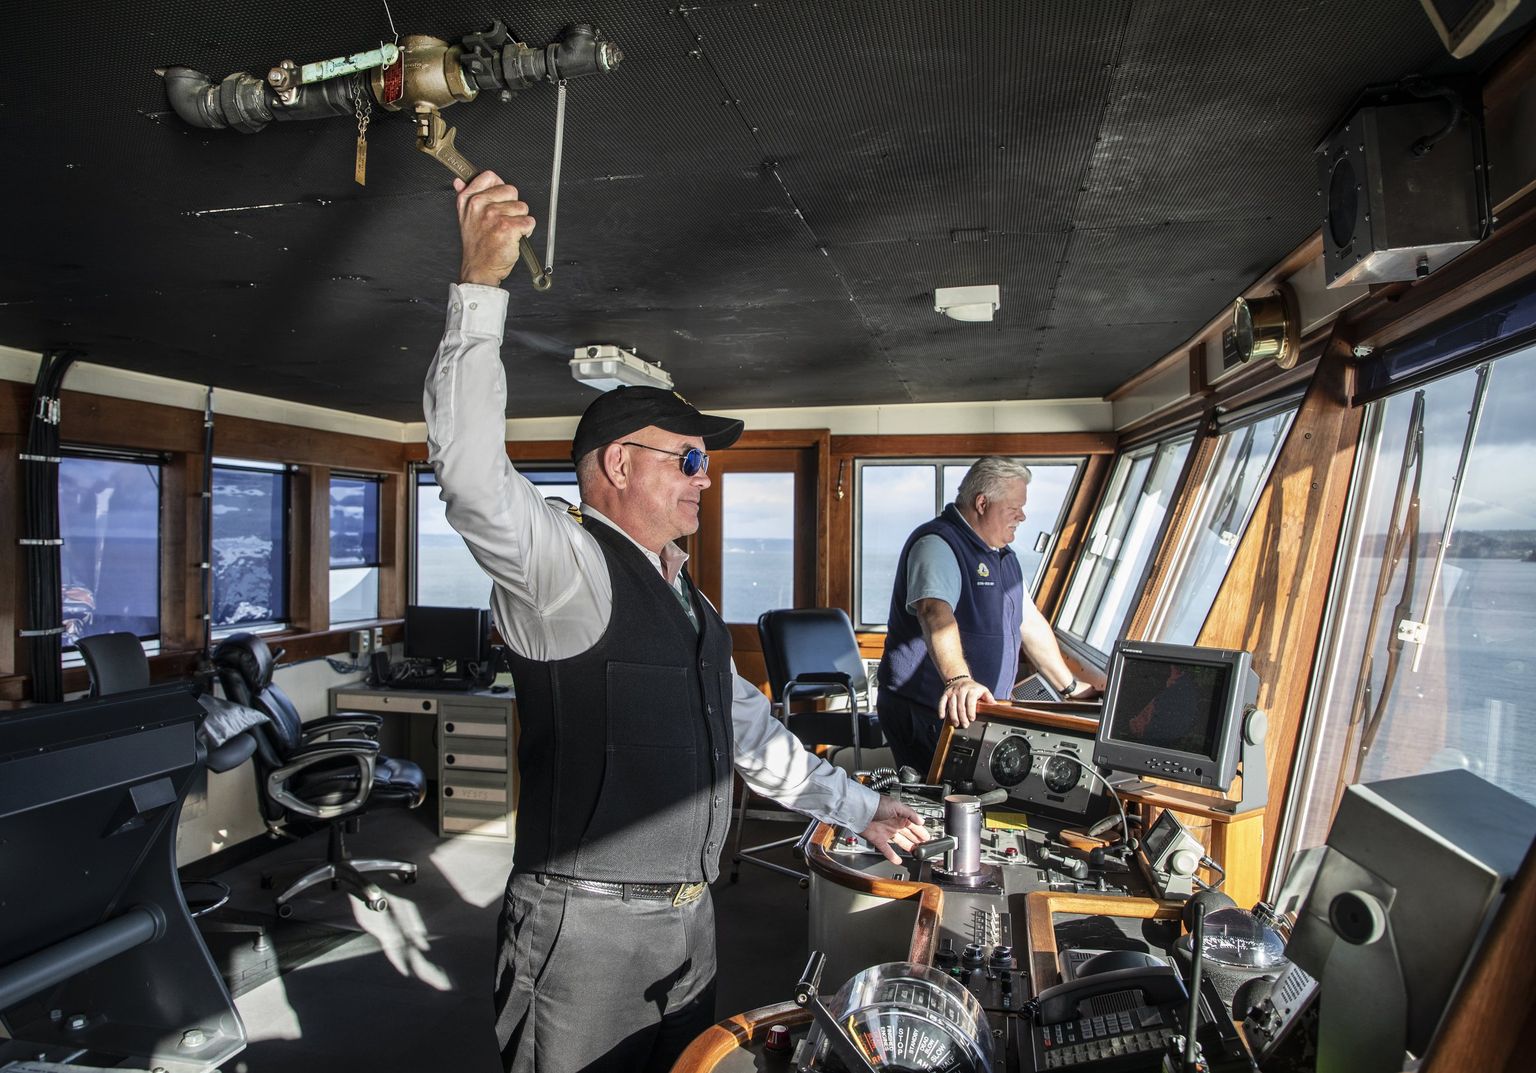 Capt. Alex Johnson blows the horn as M/V Kaleetan approaches the Edmonds ferry dock.